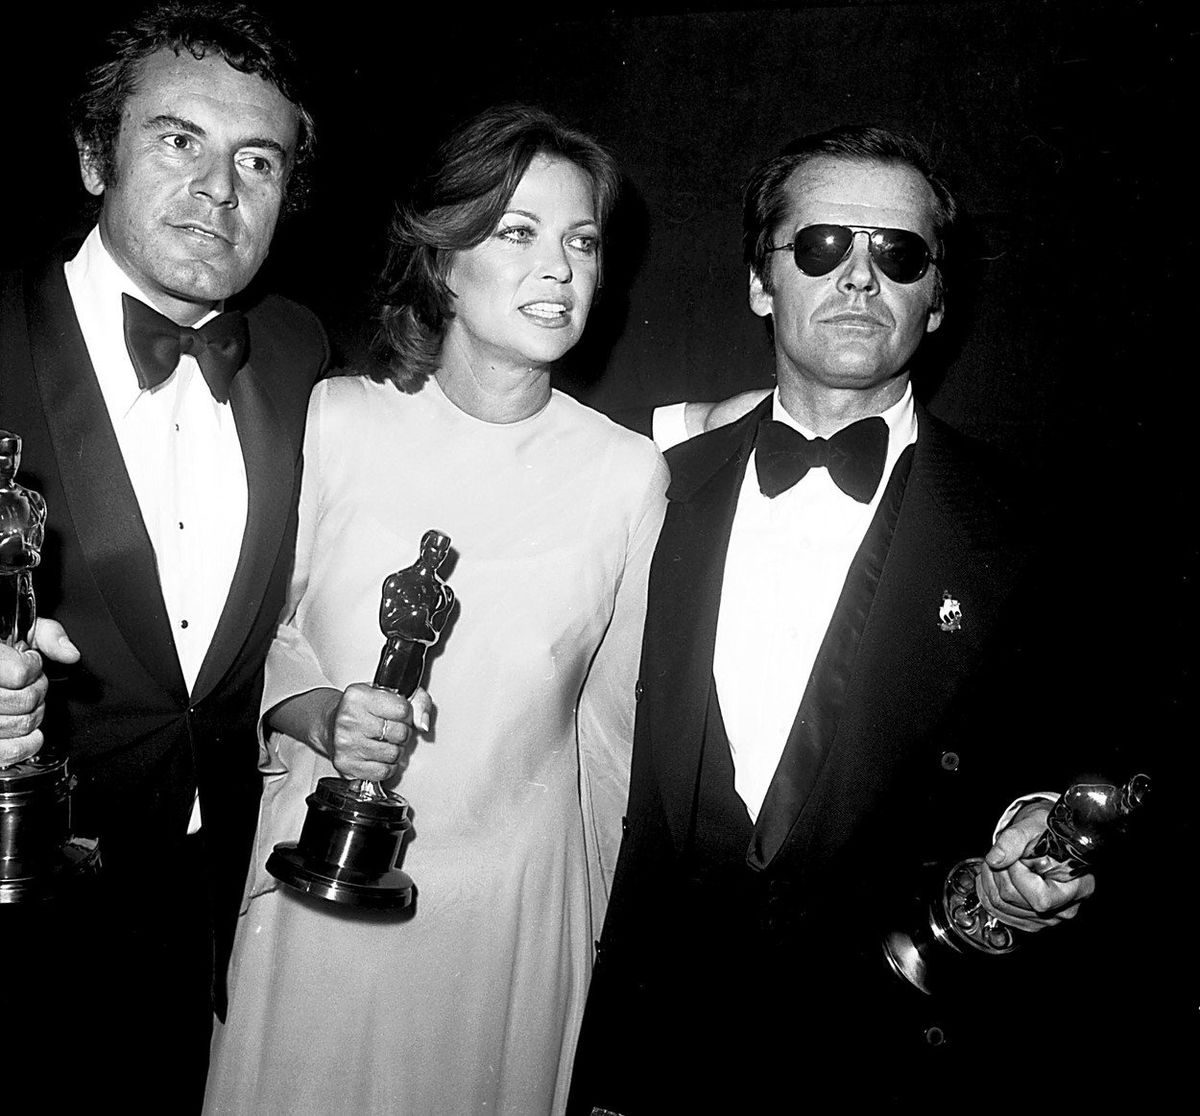 Přelet nad kukaččím hnízdem na Oscarech v roce 1976: zleva Miloš Forman a herci Louise Fletcherová a Jack Nicholson